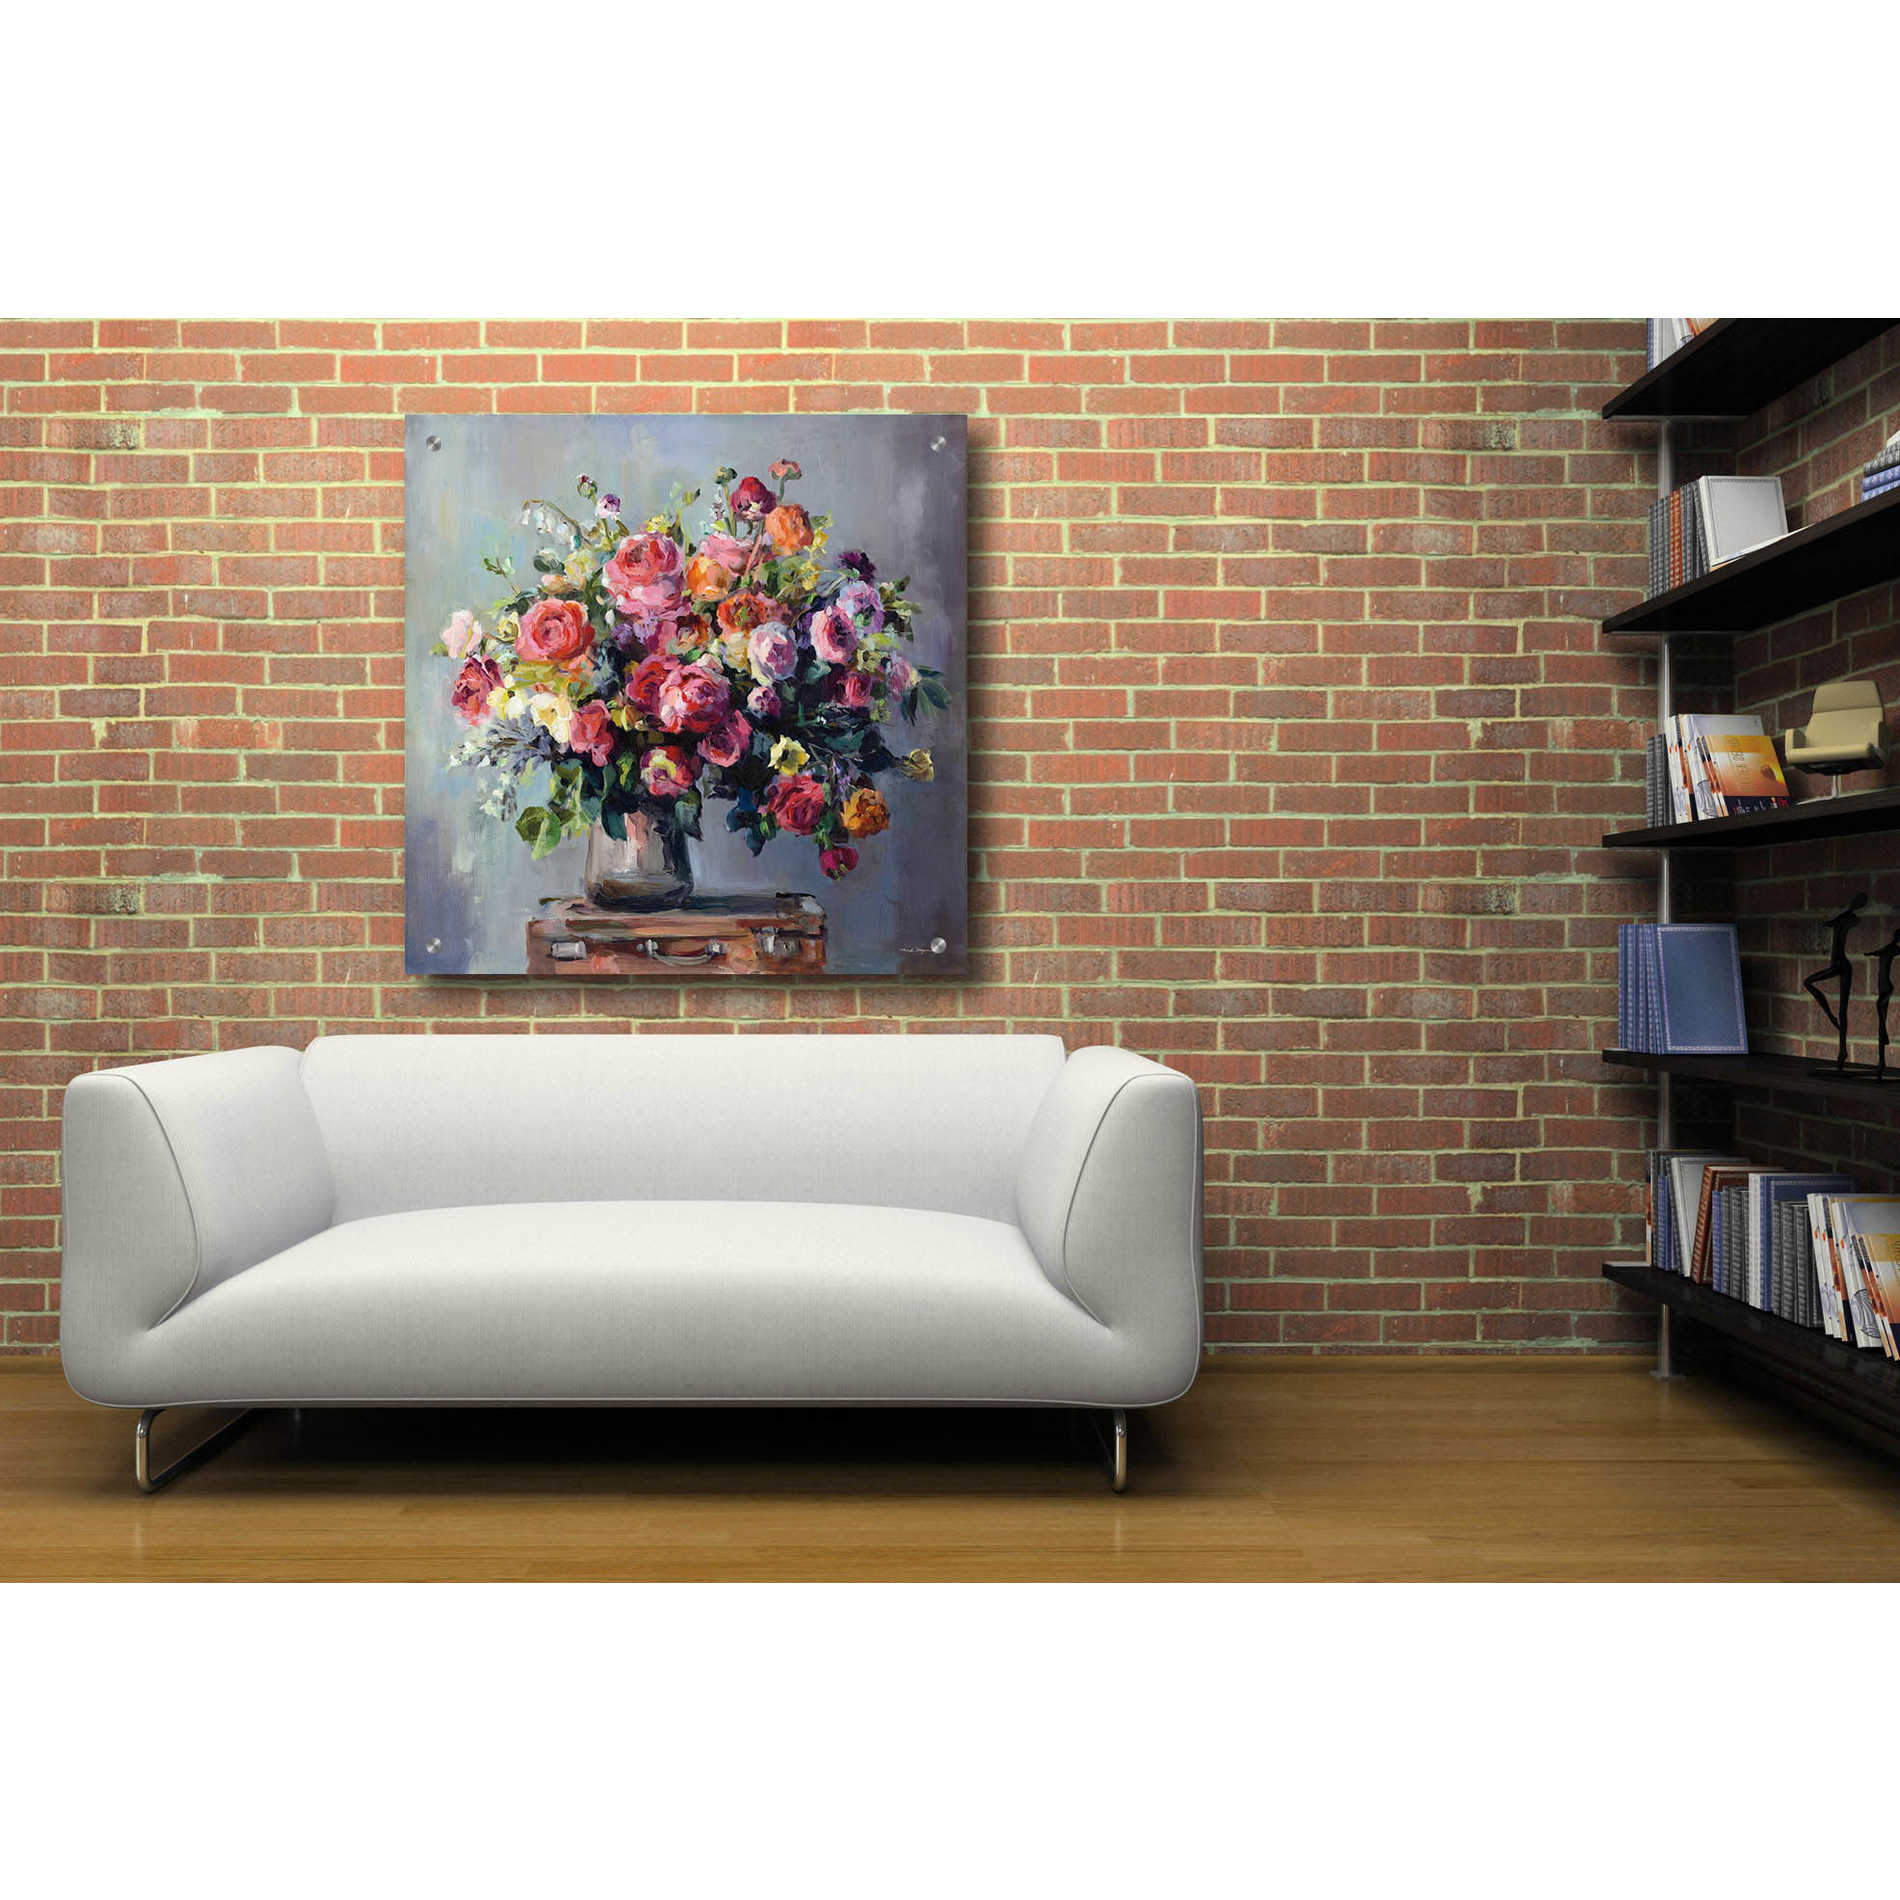 Epic Art 'Abundant Bouquet' by Marilyn Hageman, Acrylic Glass Wall Art,36x36